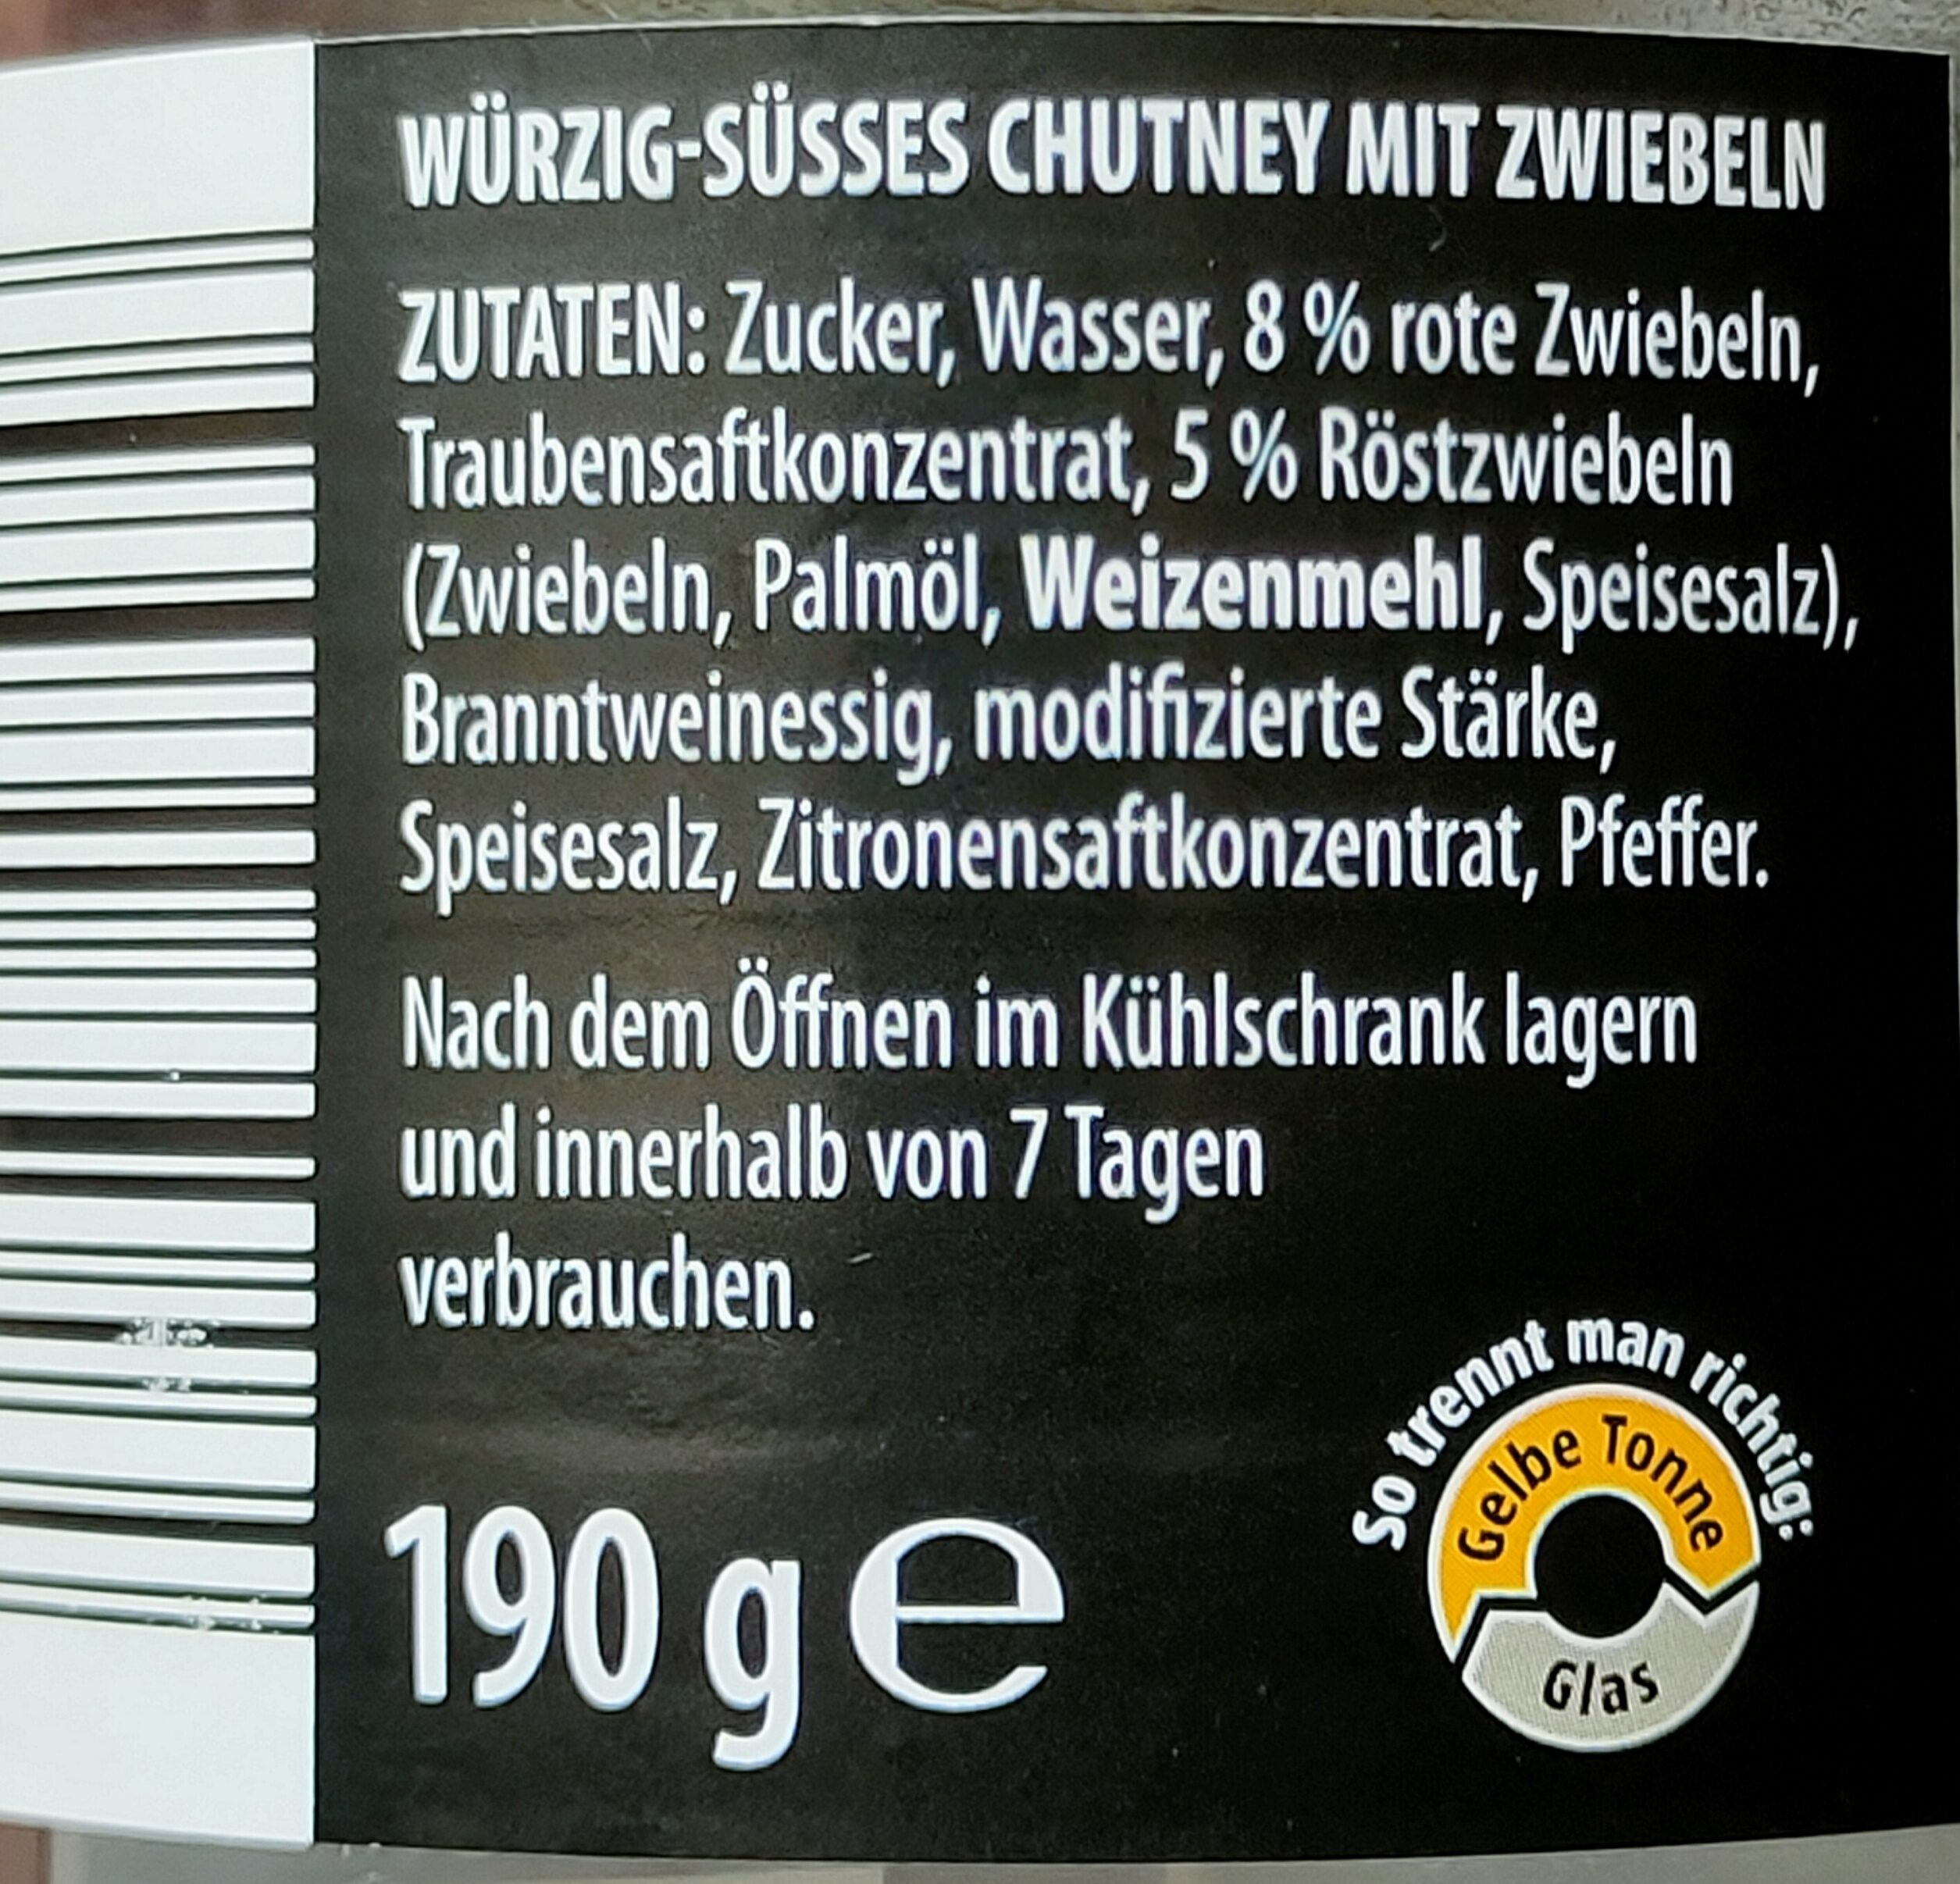 Chutney - Zwiebel - Ingredients - de